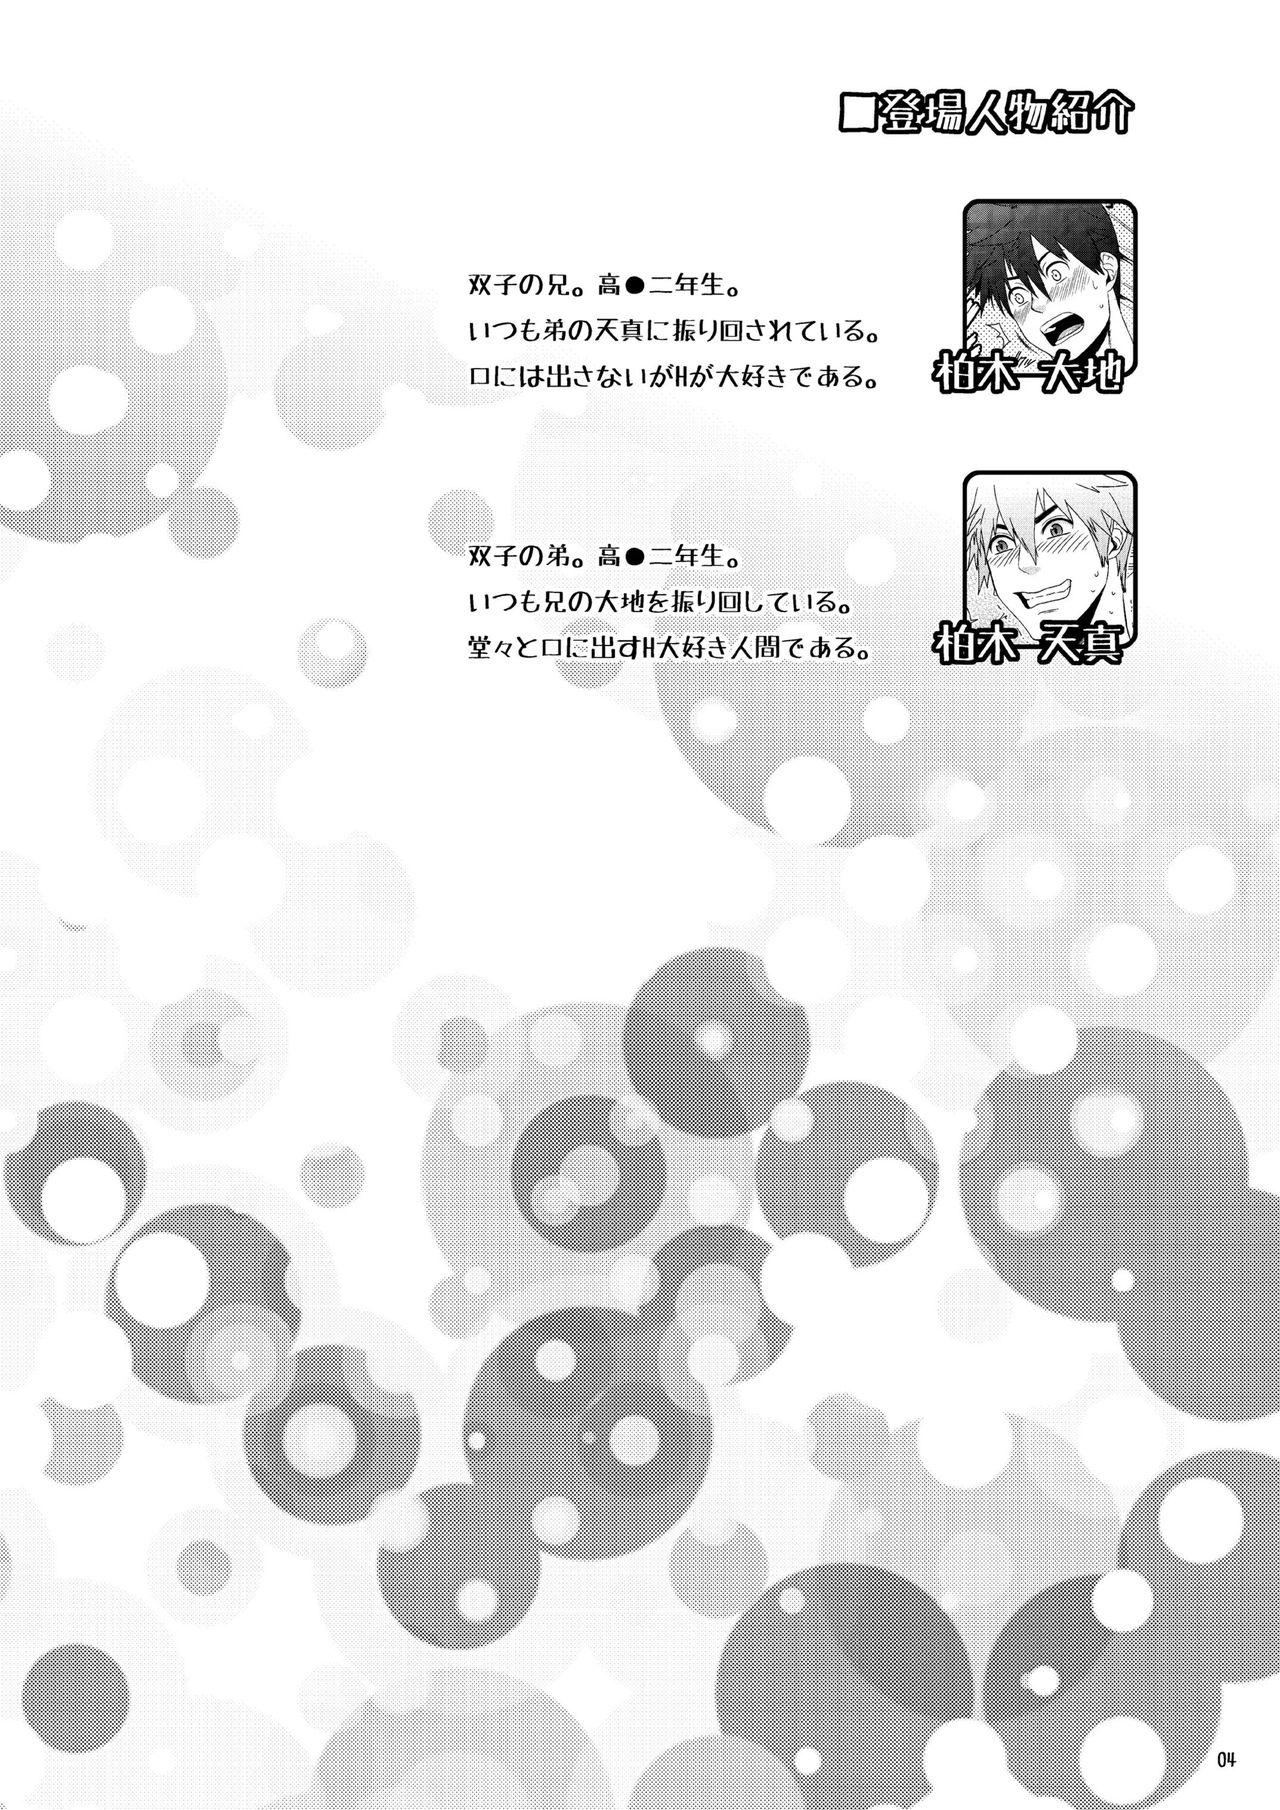 Juggs H na Futago wa Nichijouchahanji. - Original Furry - Page 3